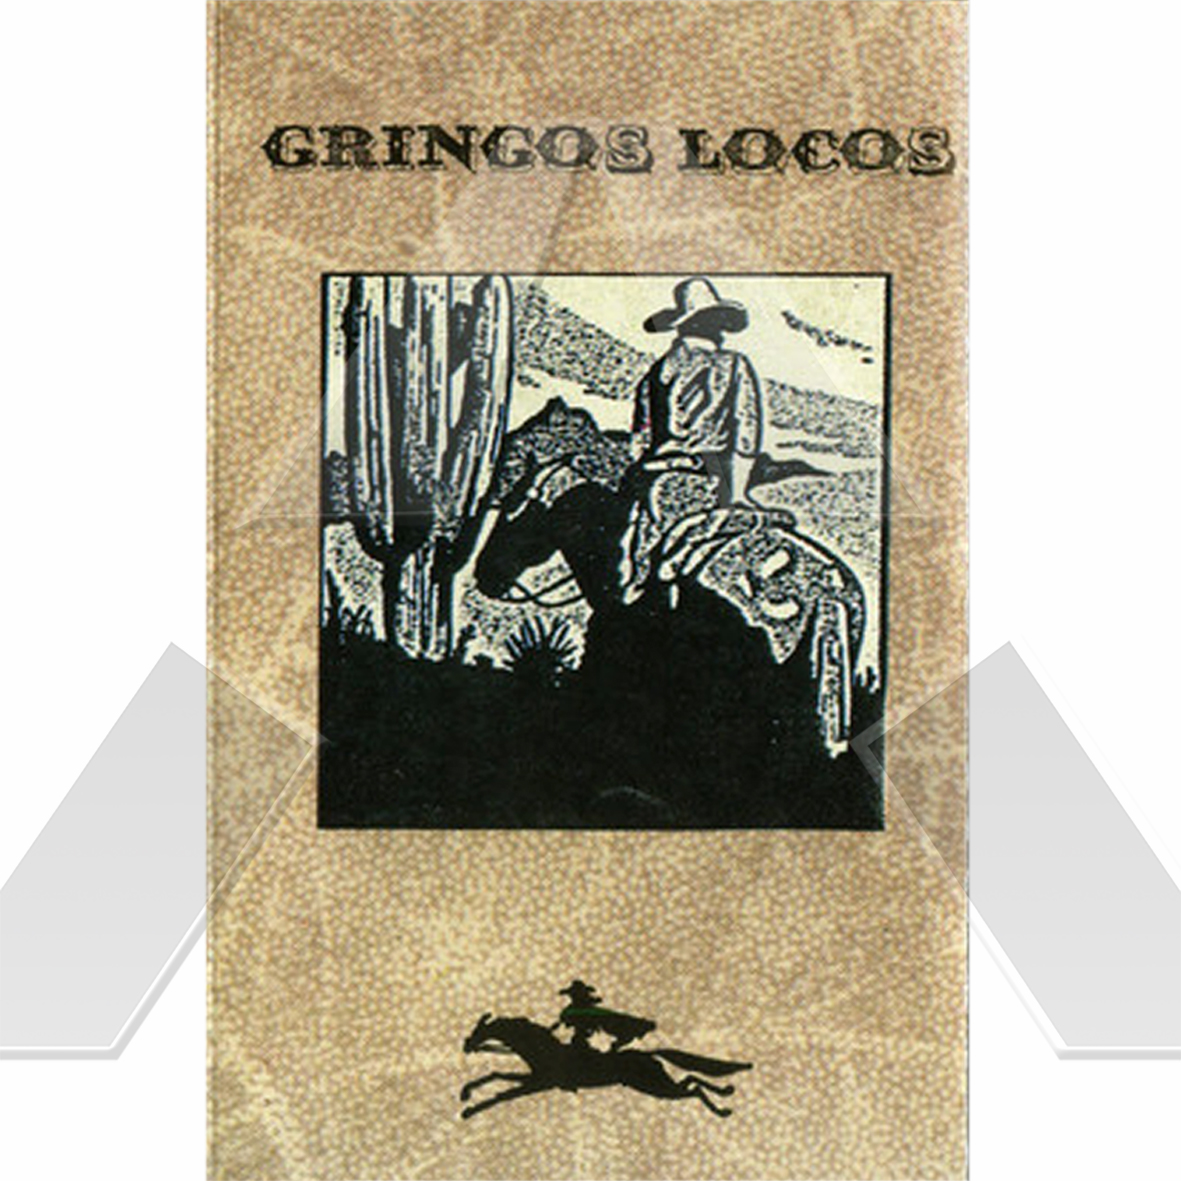 Gringos Locos ★ Gringos Locos (c-cassette EU 8342044)